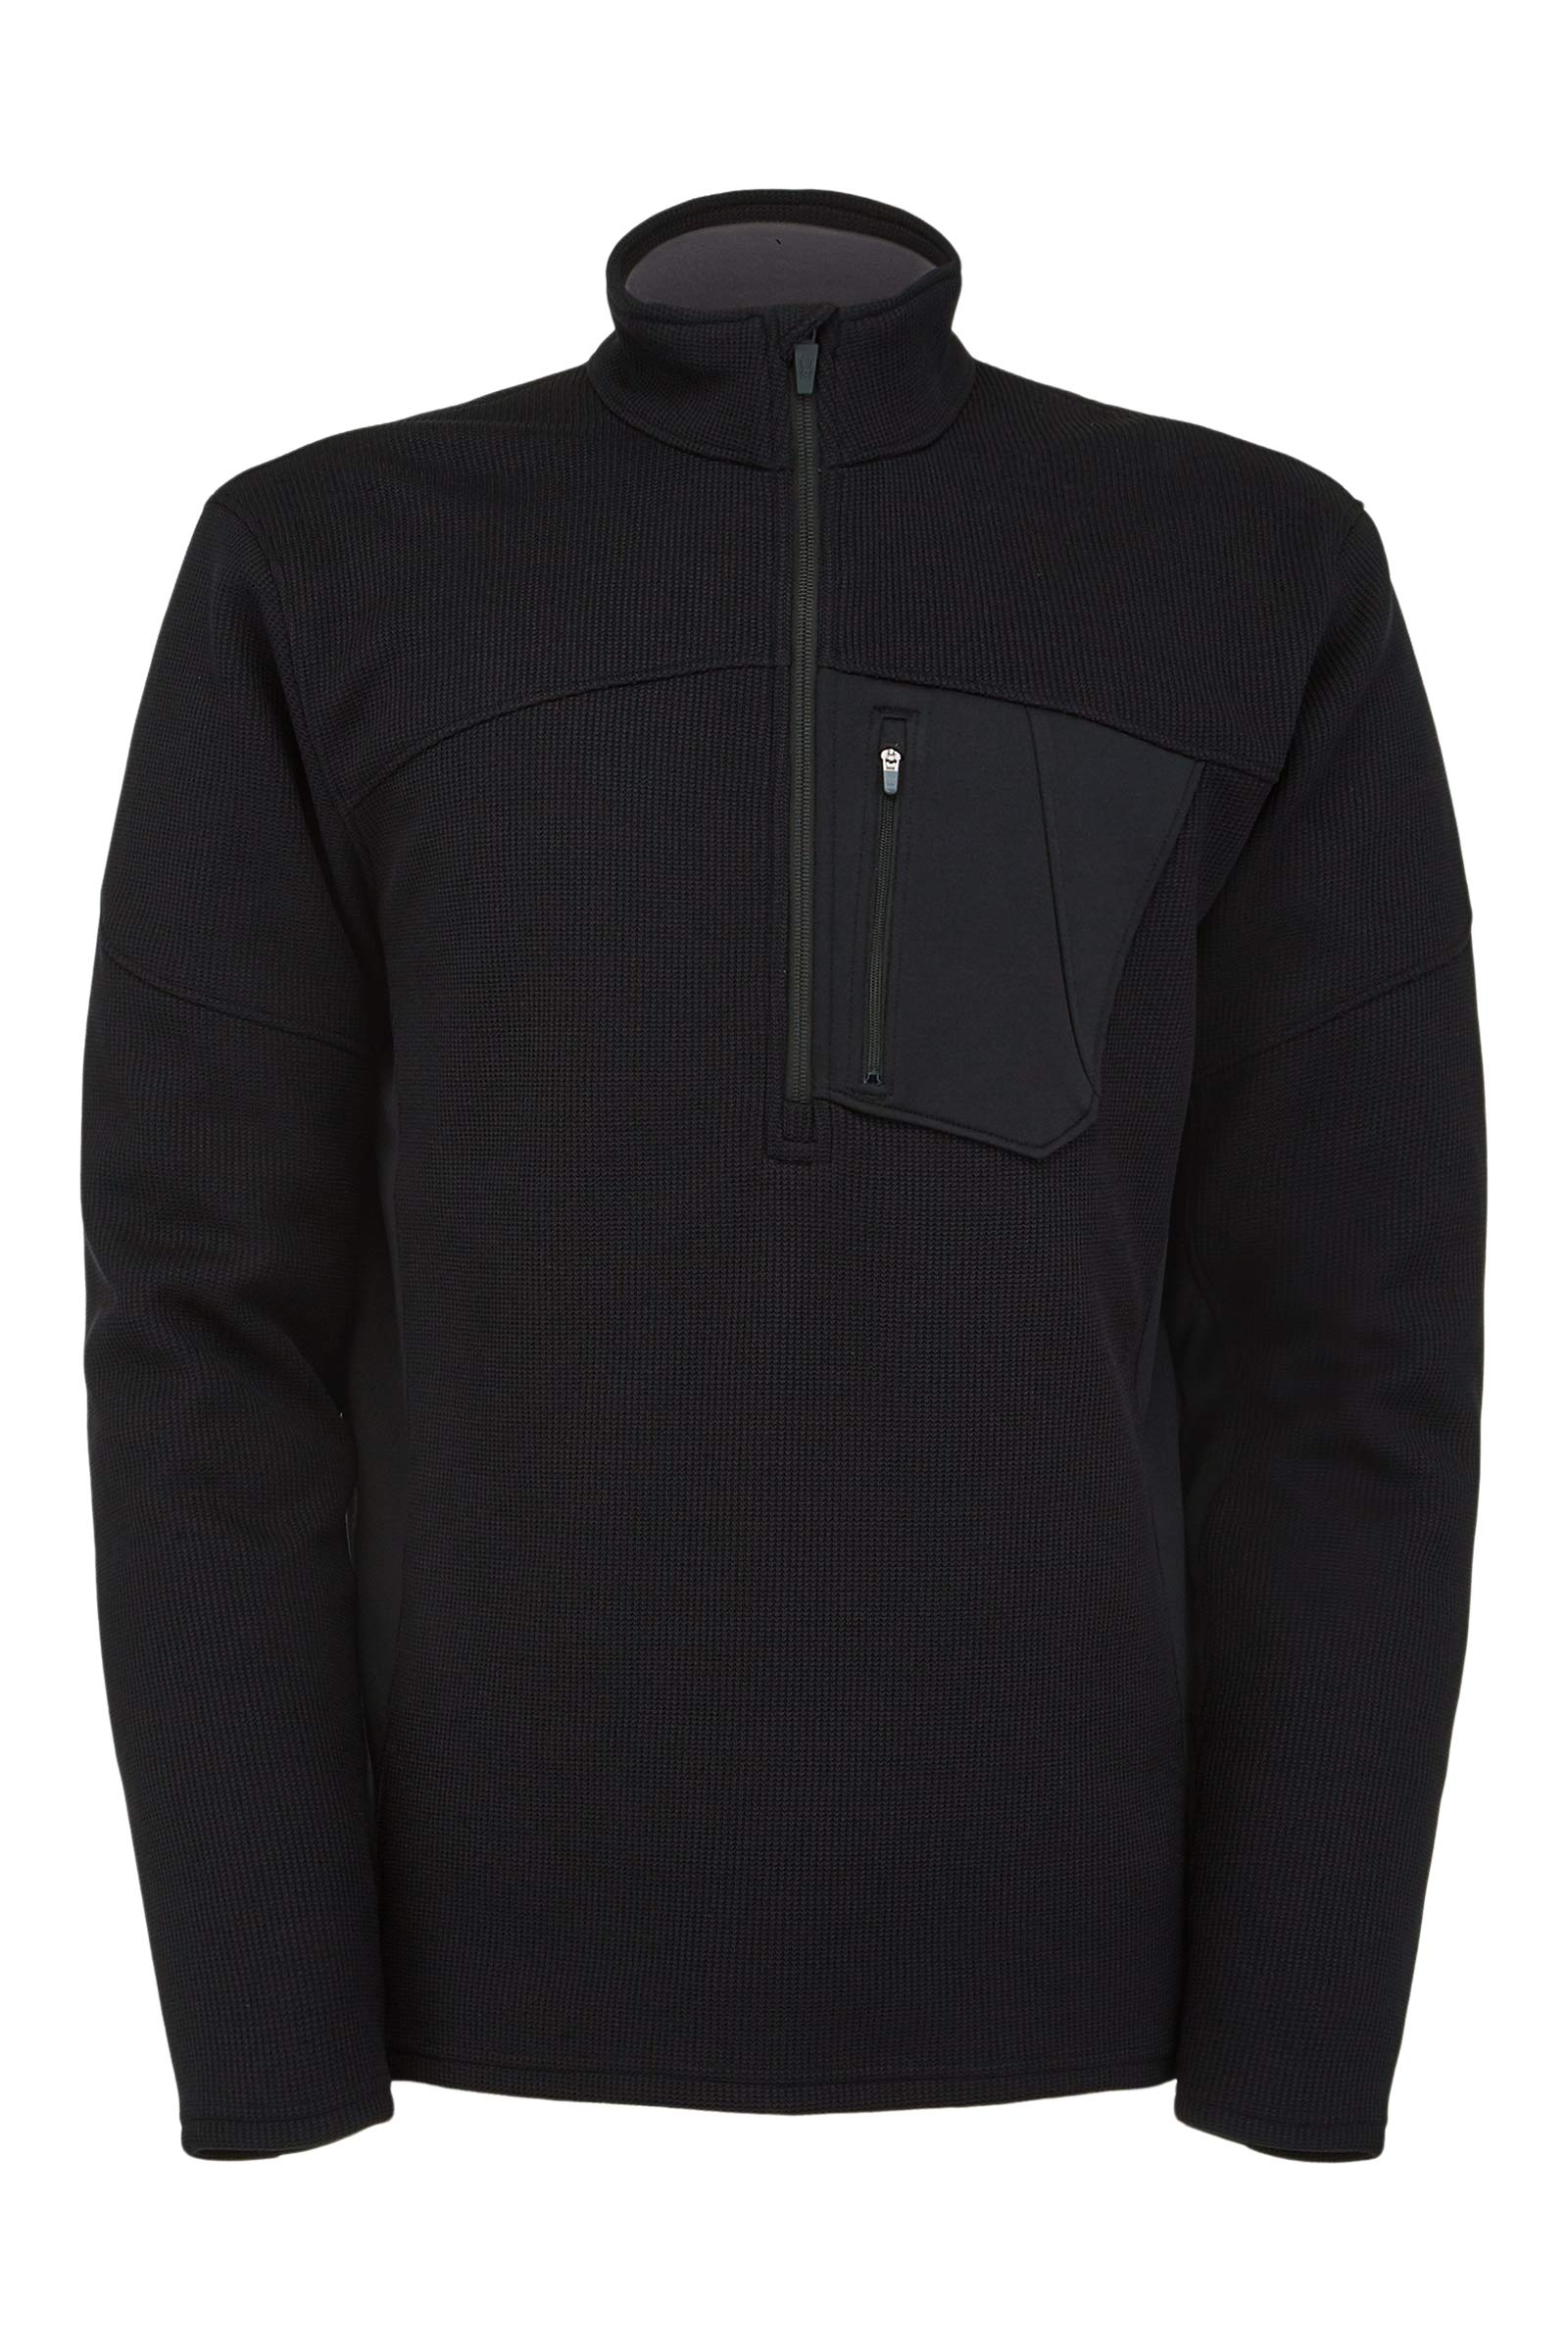 Spyder Men's Bandit Half Zip Fleece Jacket, Black, Large